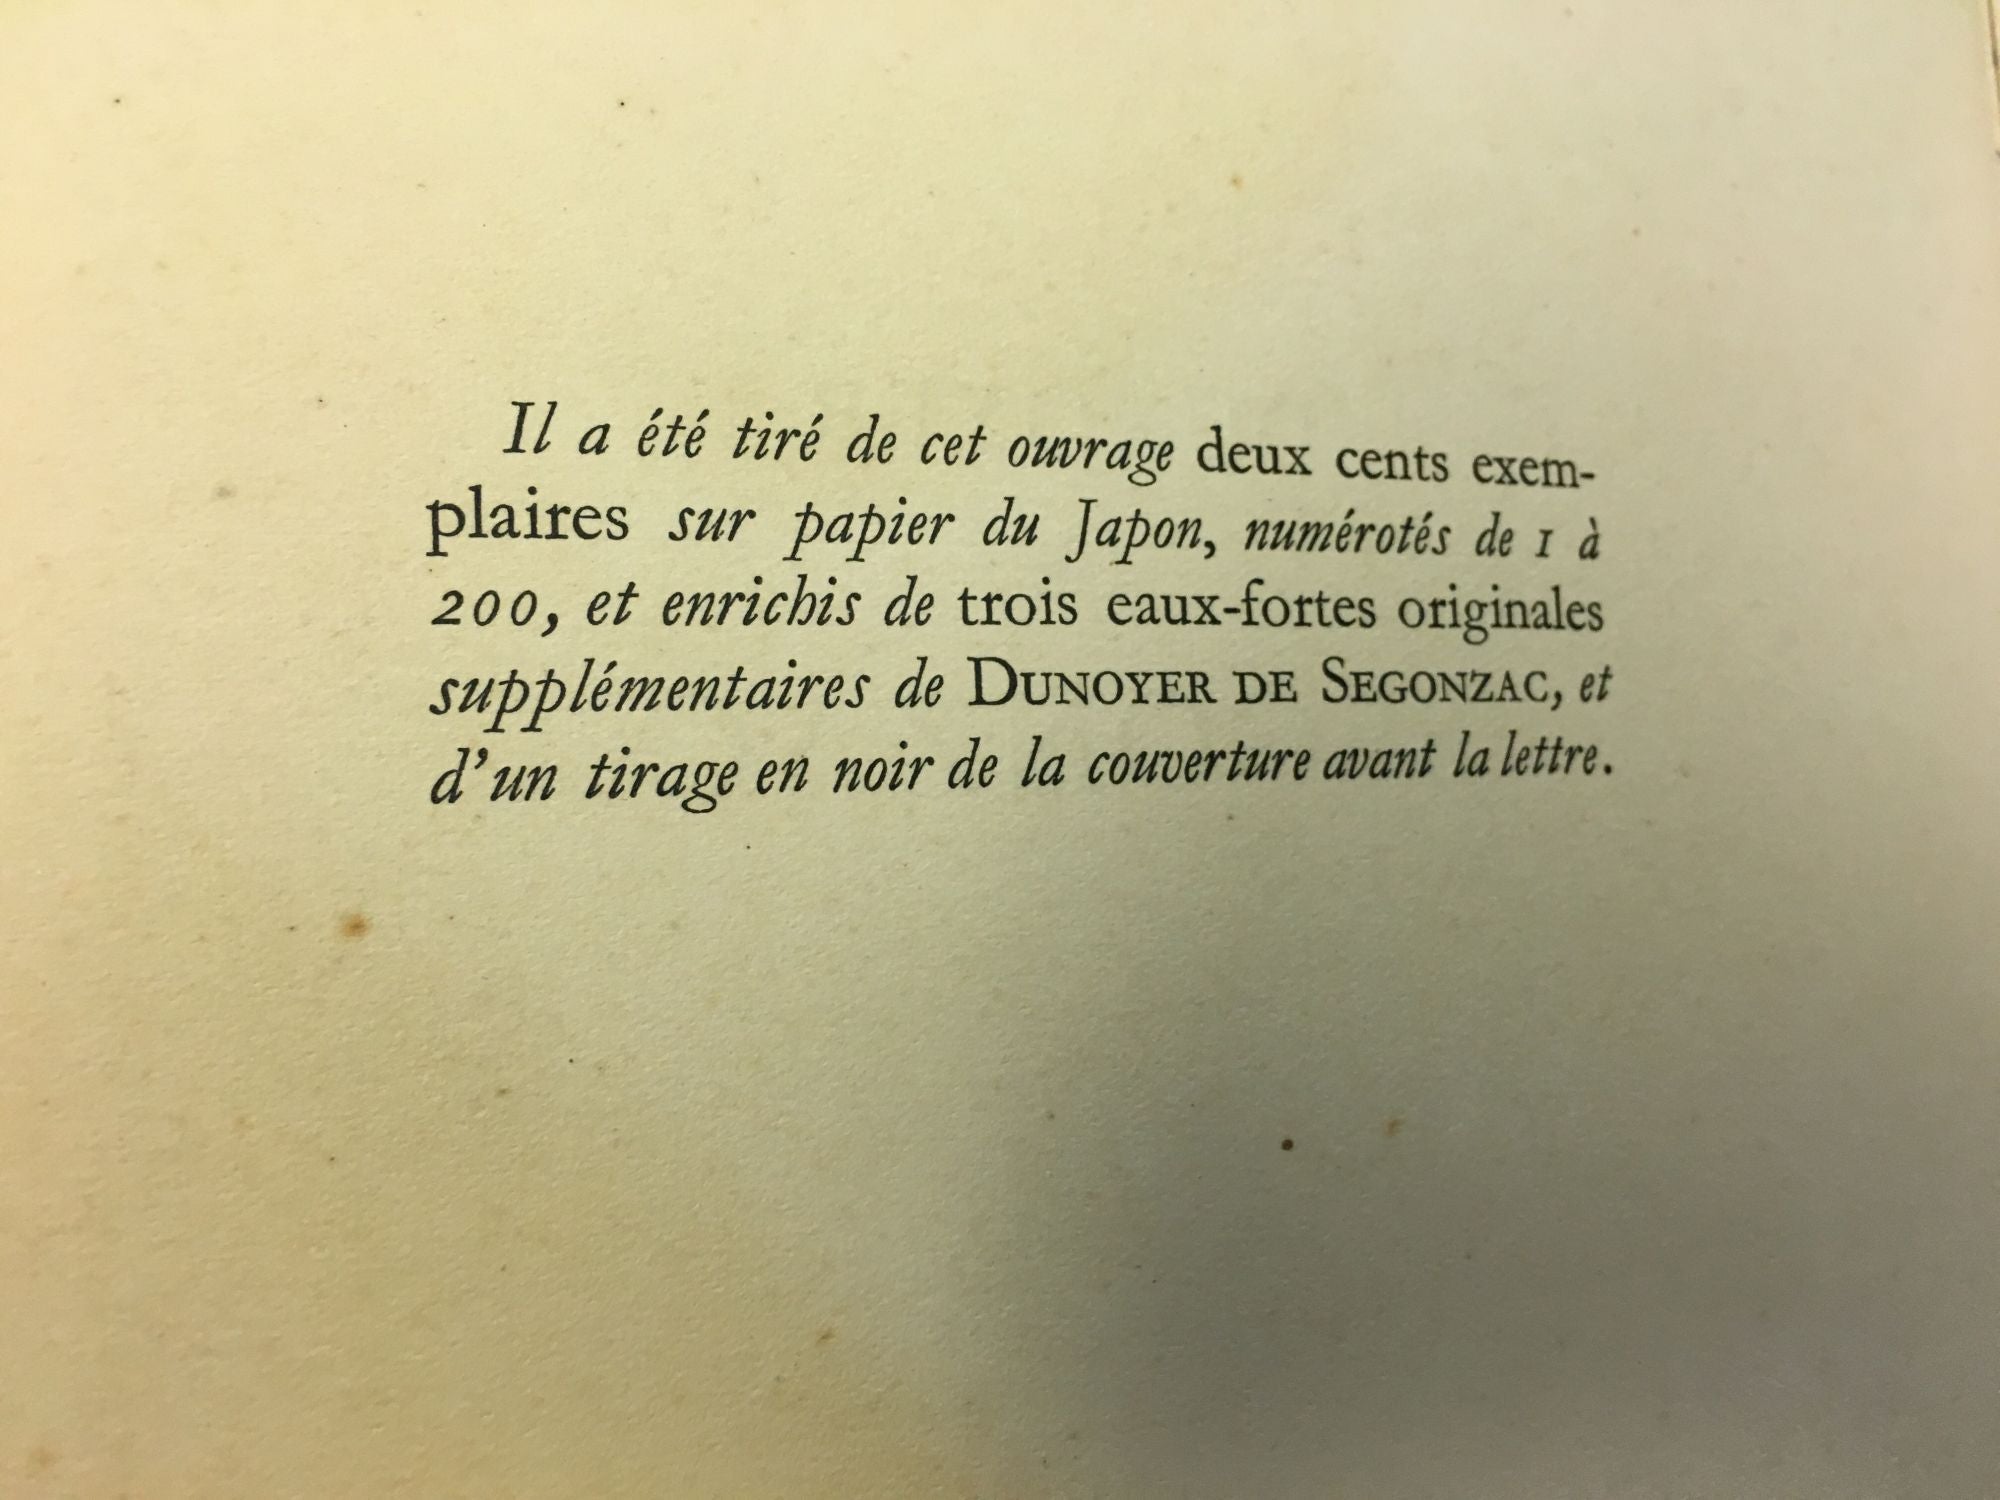 DUNOYER DE SEGONZAC | Dunoyer de Segonzac, Paul Jamot | First Edition ...